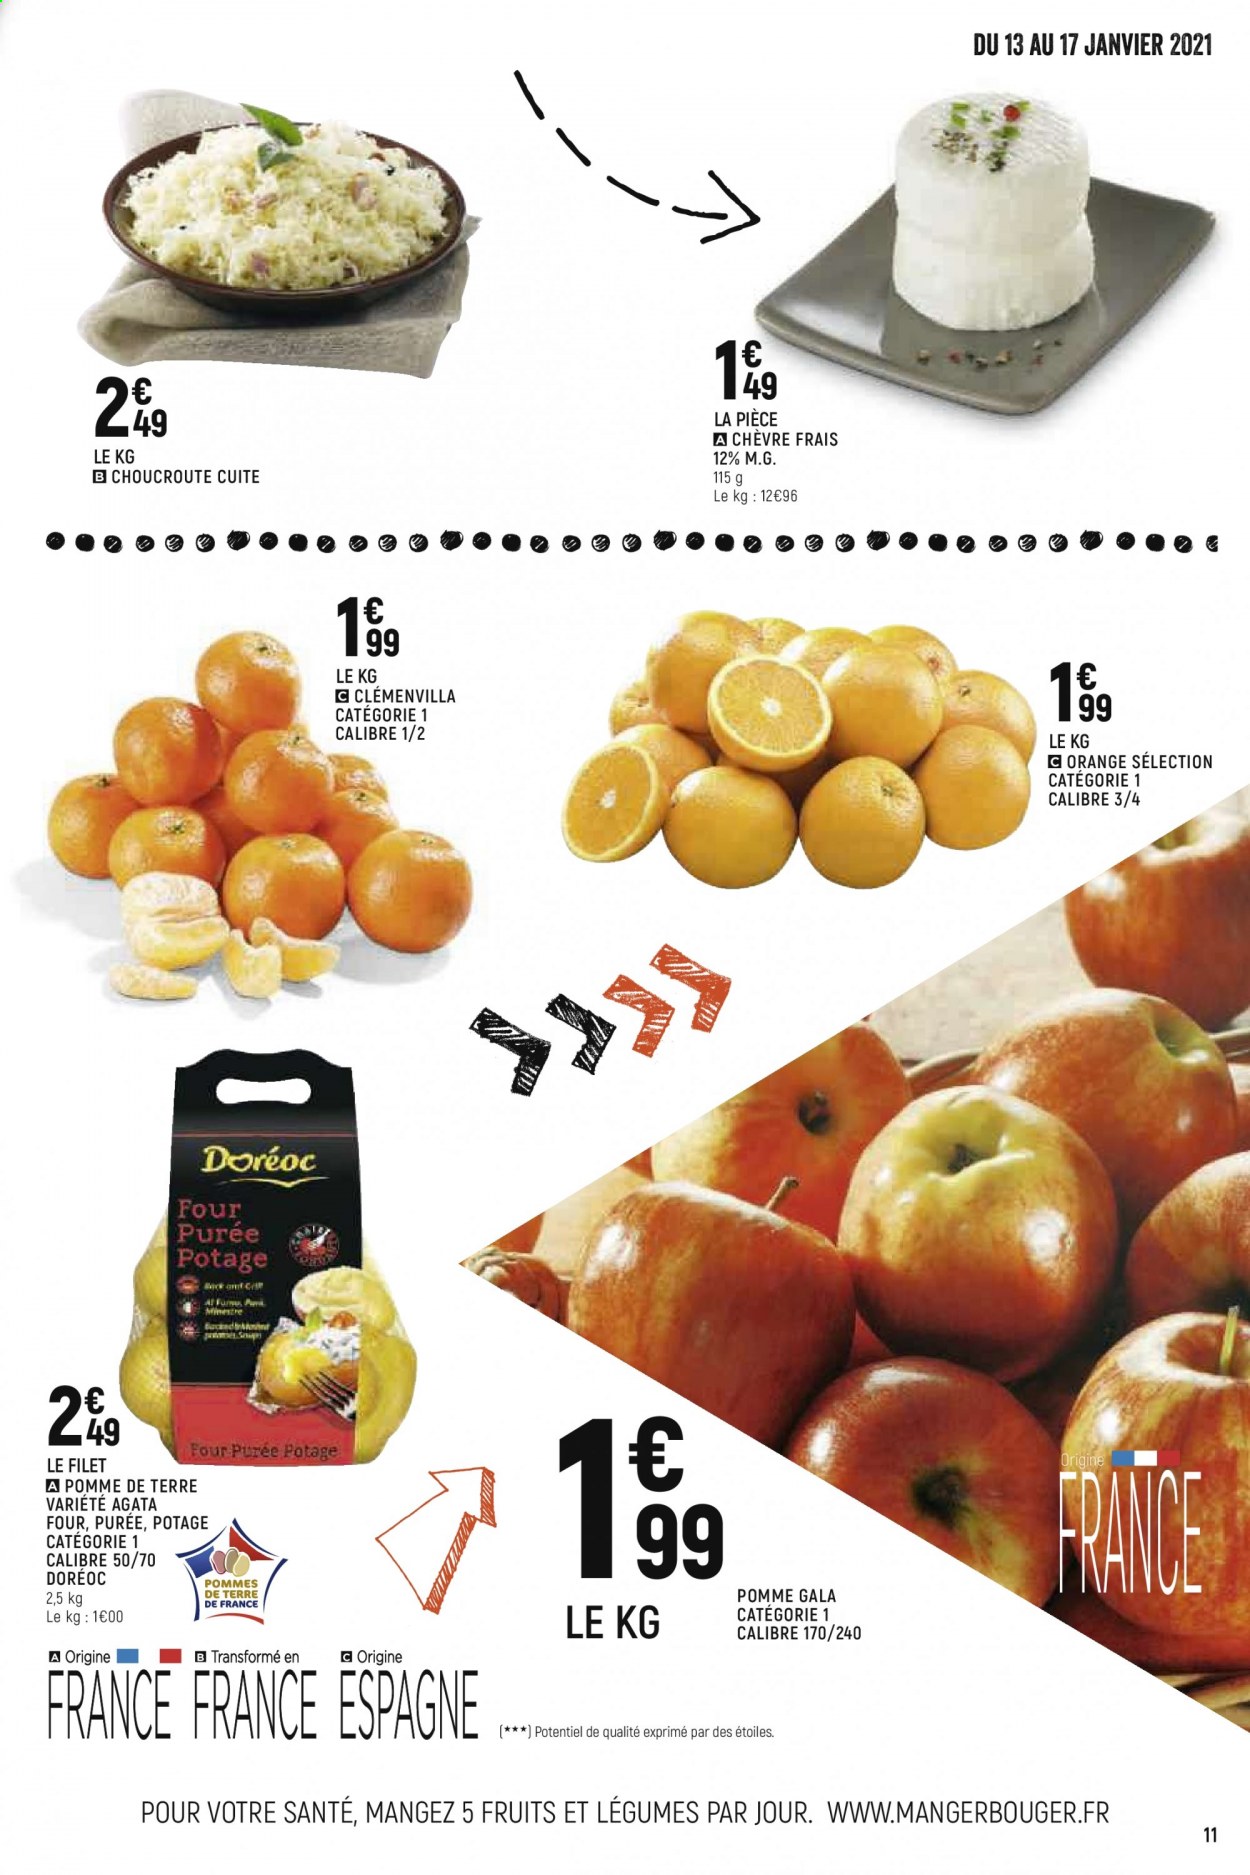 Catalogue Spar Supermarché - 13.01.2021 - 24.01.2021. 